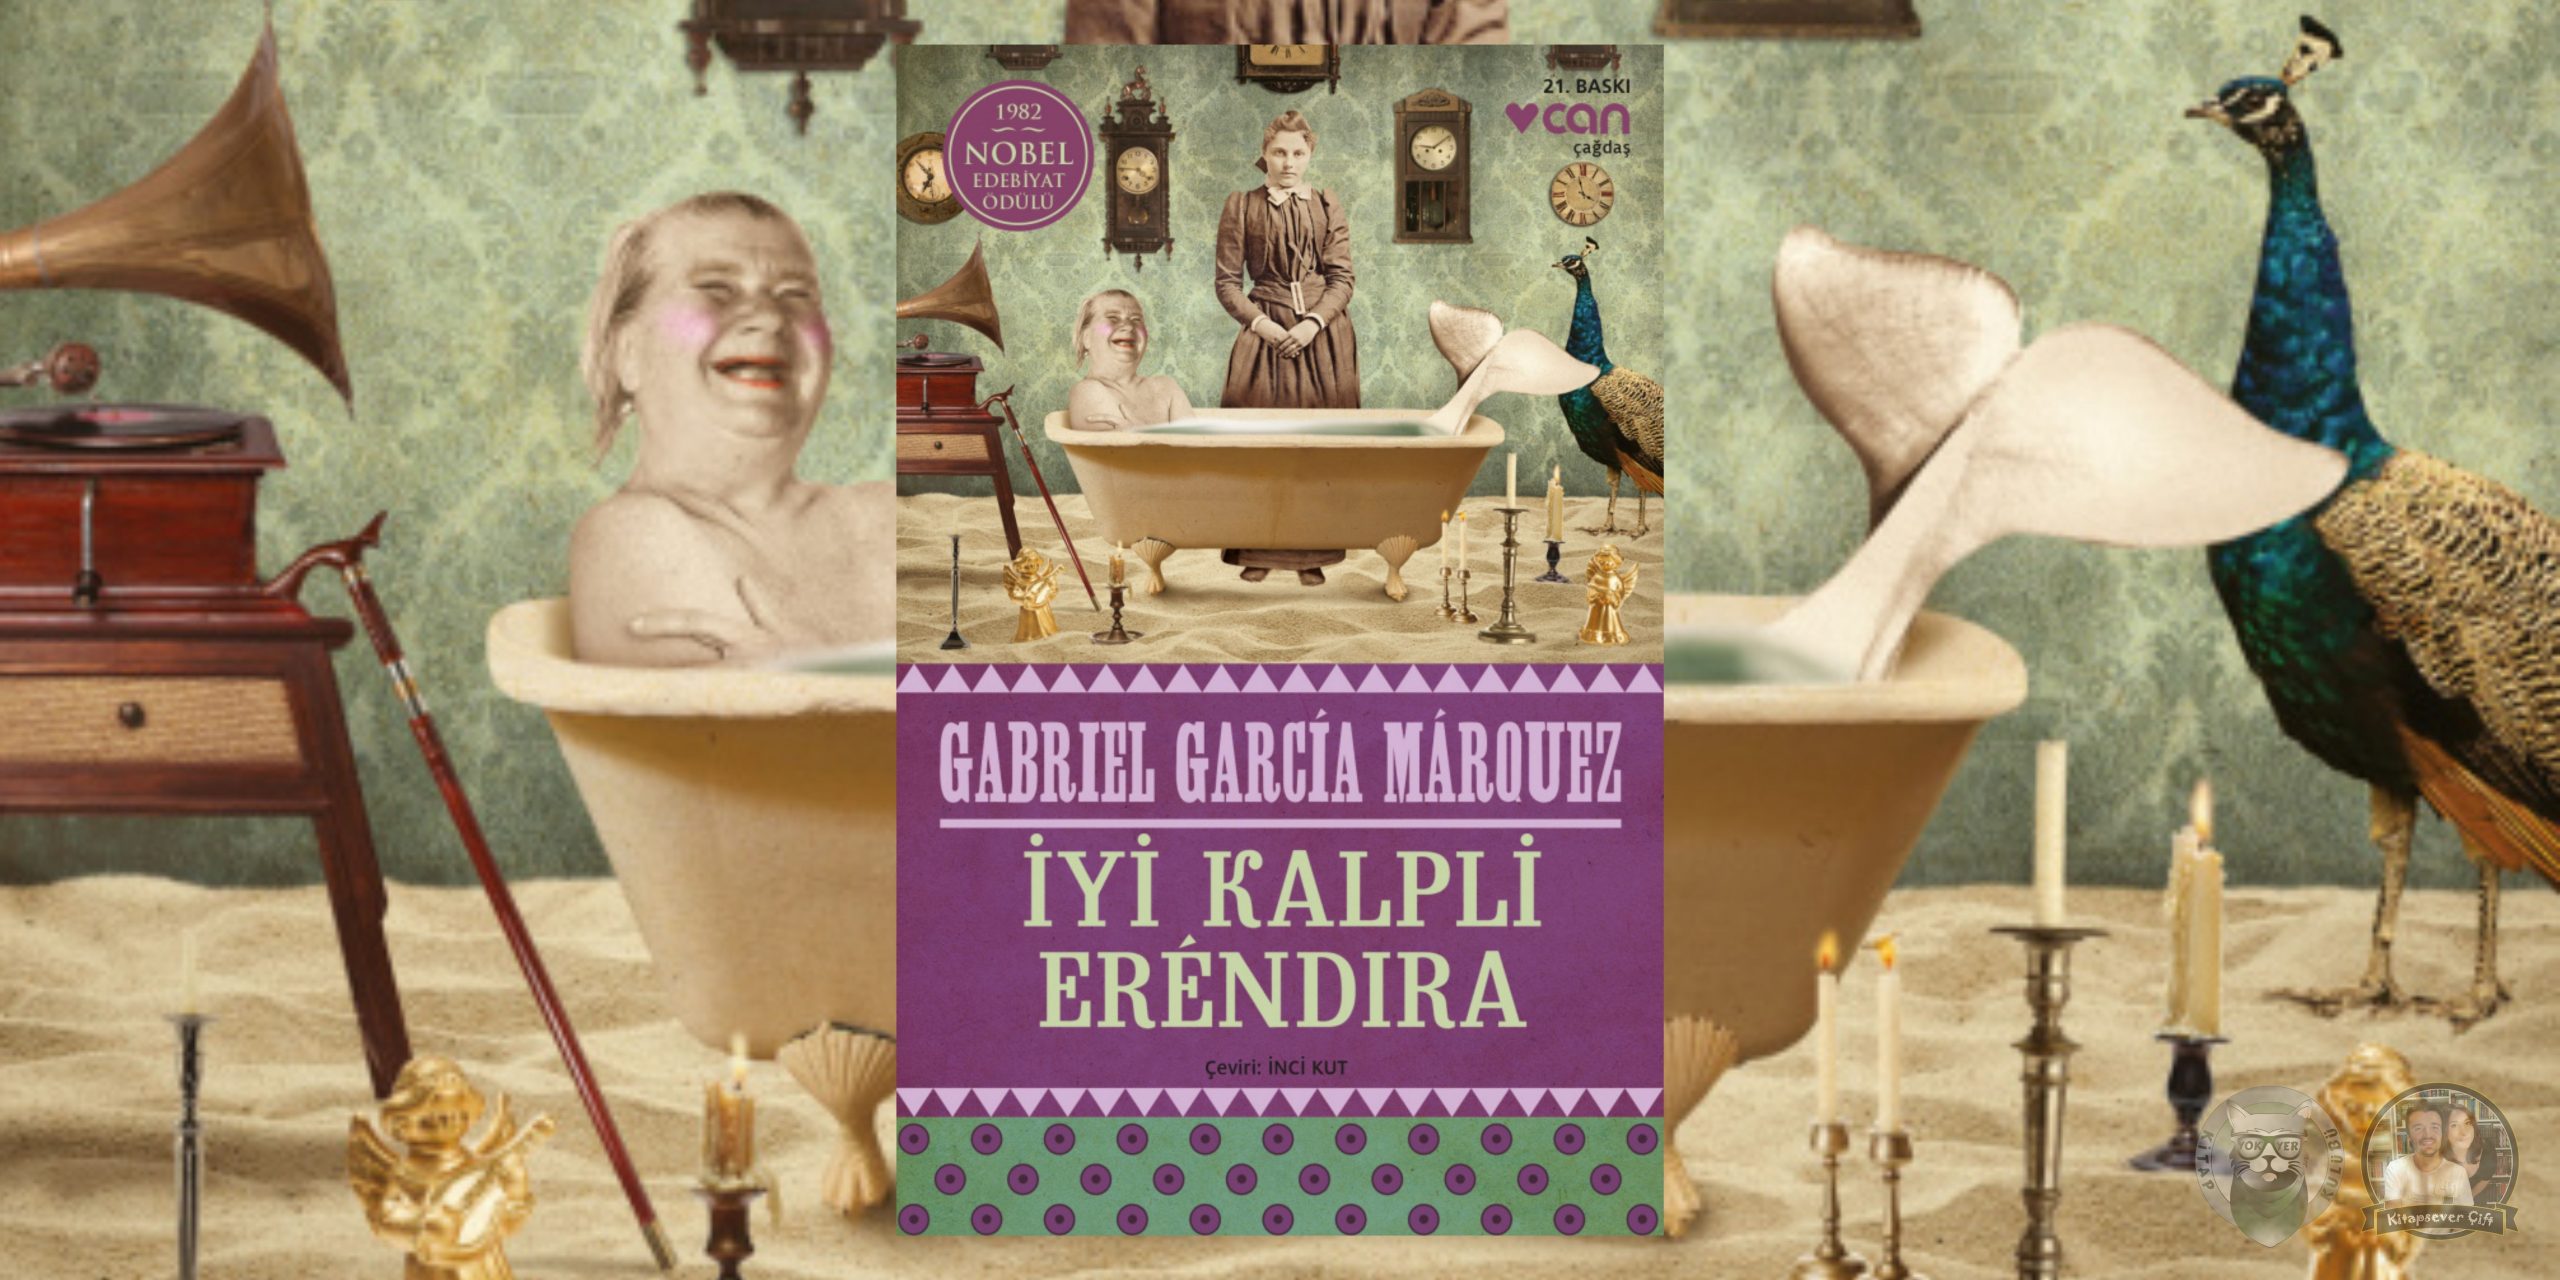 gabriel garcia marquez kitapları 7 – iyi kalpli erendira scaled